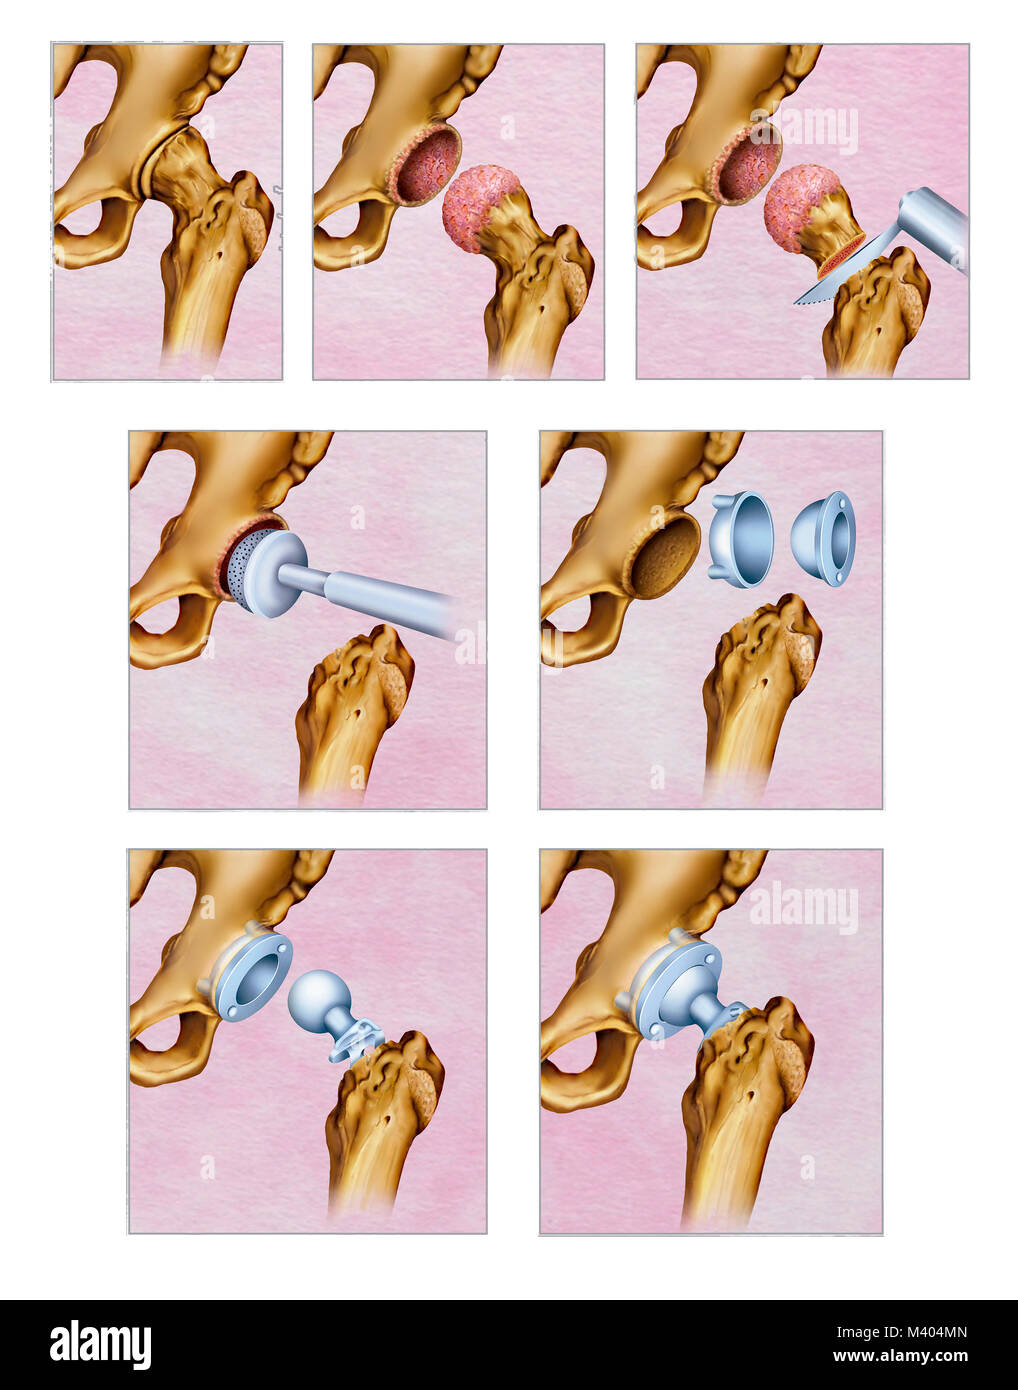 Ilustración sobre el tratamiento quirúrgico por artrosis en la articulación de la cadera. La artrosis de cadera es el desgaste del cartílago de la art Stock Photo